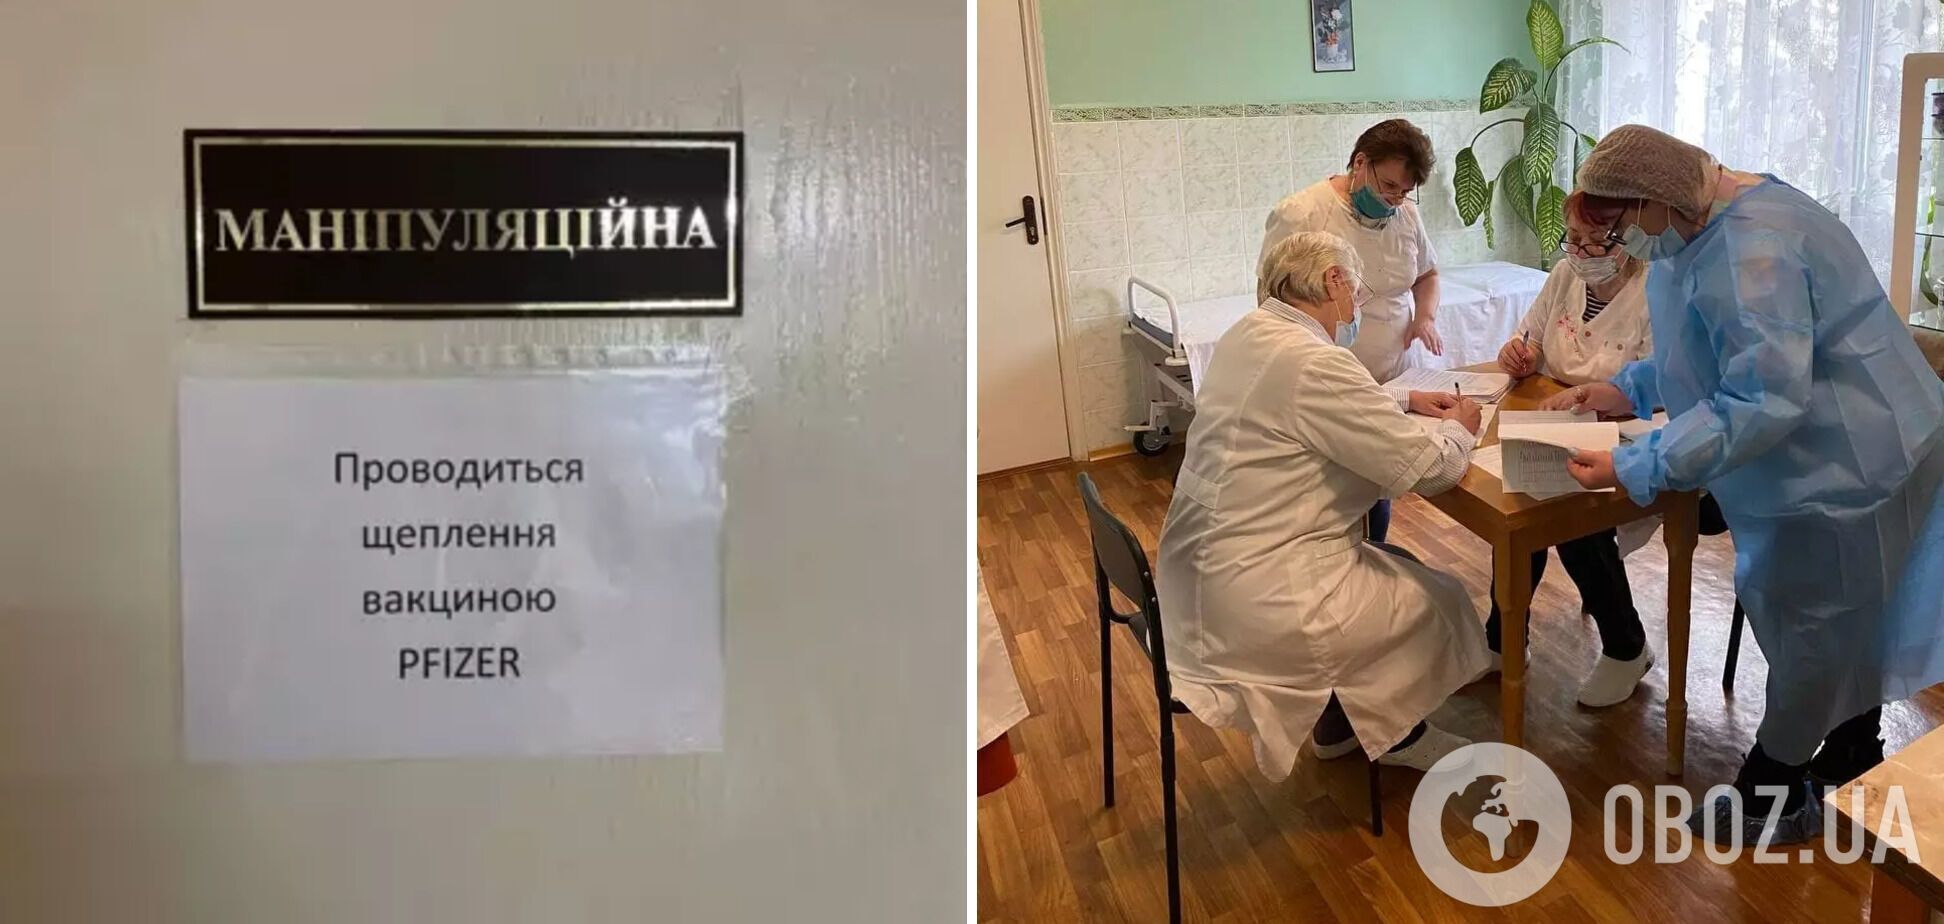 Щеплення вакциною Pfizer почали робити в будинку-інтернаті в Бородянці